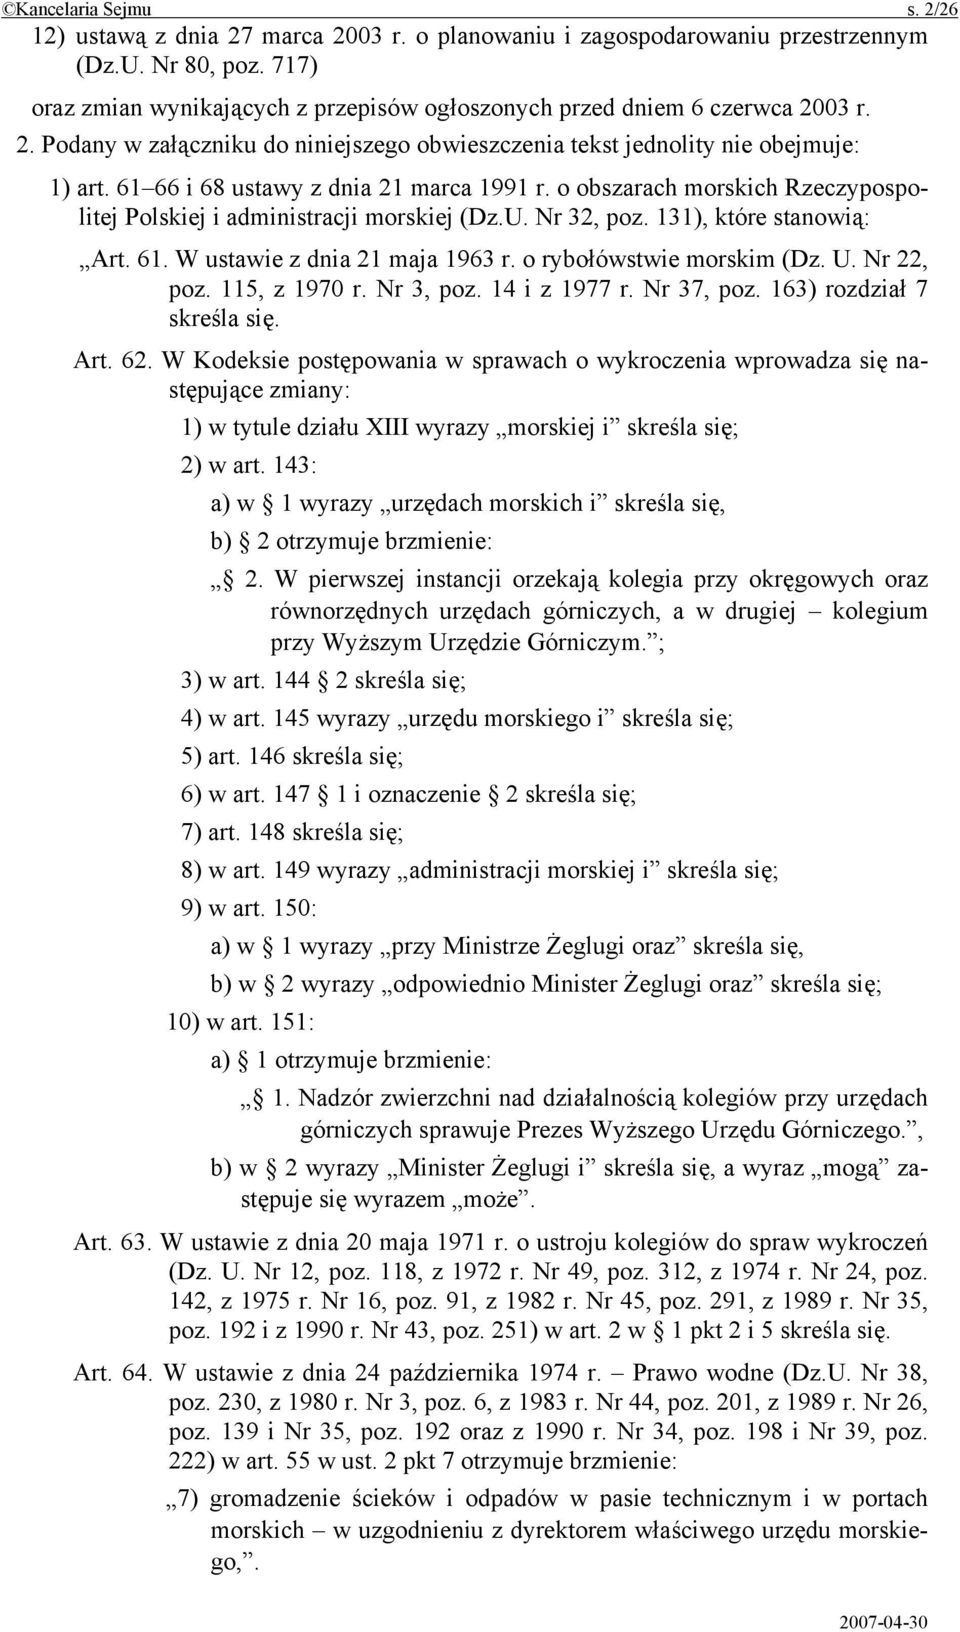 61 66 i 68 ustawy z dnia 21 marca 1991 r. o obszarach morskich Rzeczypospolitej Polskiej i administracji morskiej (Dz.U. Nr 32, poz. 131), które stanowią: Art. 61. W ustawie z dnia 21 maja 1963 r.